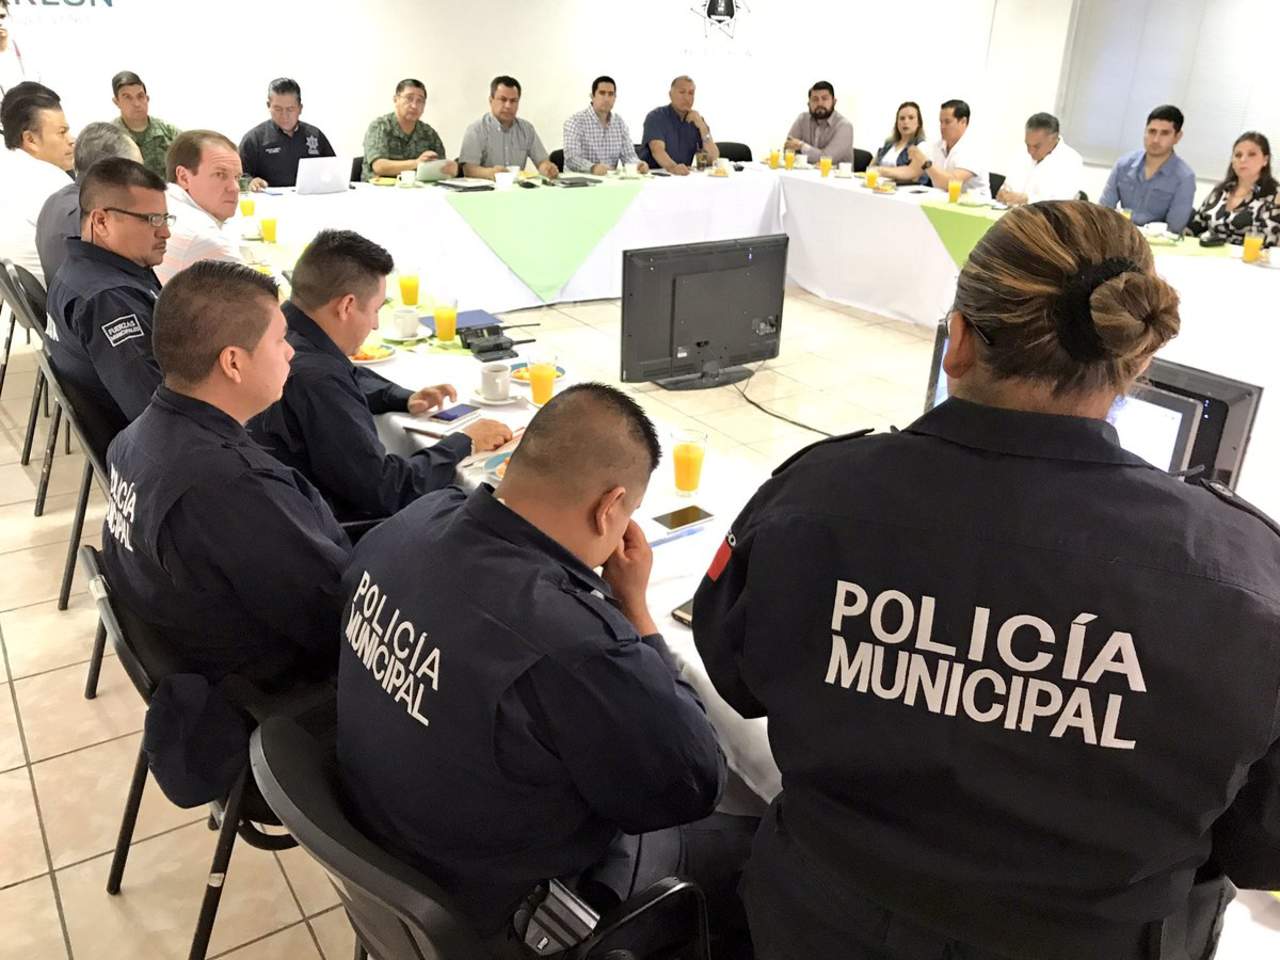 Al brindar las cifras de los delitos ocurridos en la semana que terminó, el alcalde Jorge Luis Morán Delgado expresó que en la semana se tuvieron 45 eventos contra 51 de la misma semana del año pasado. (TWITTER)